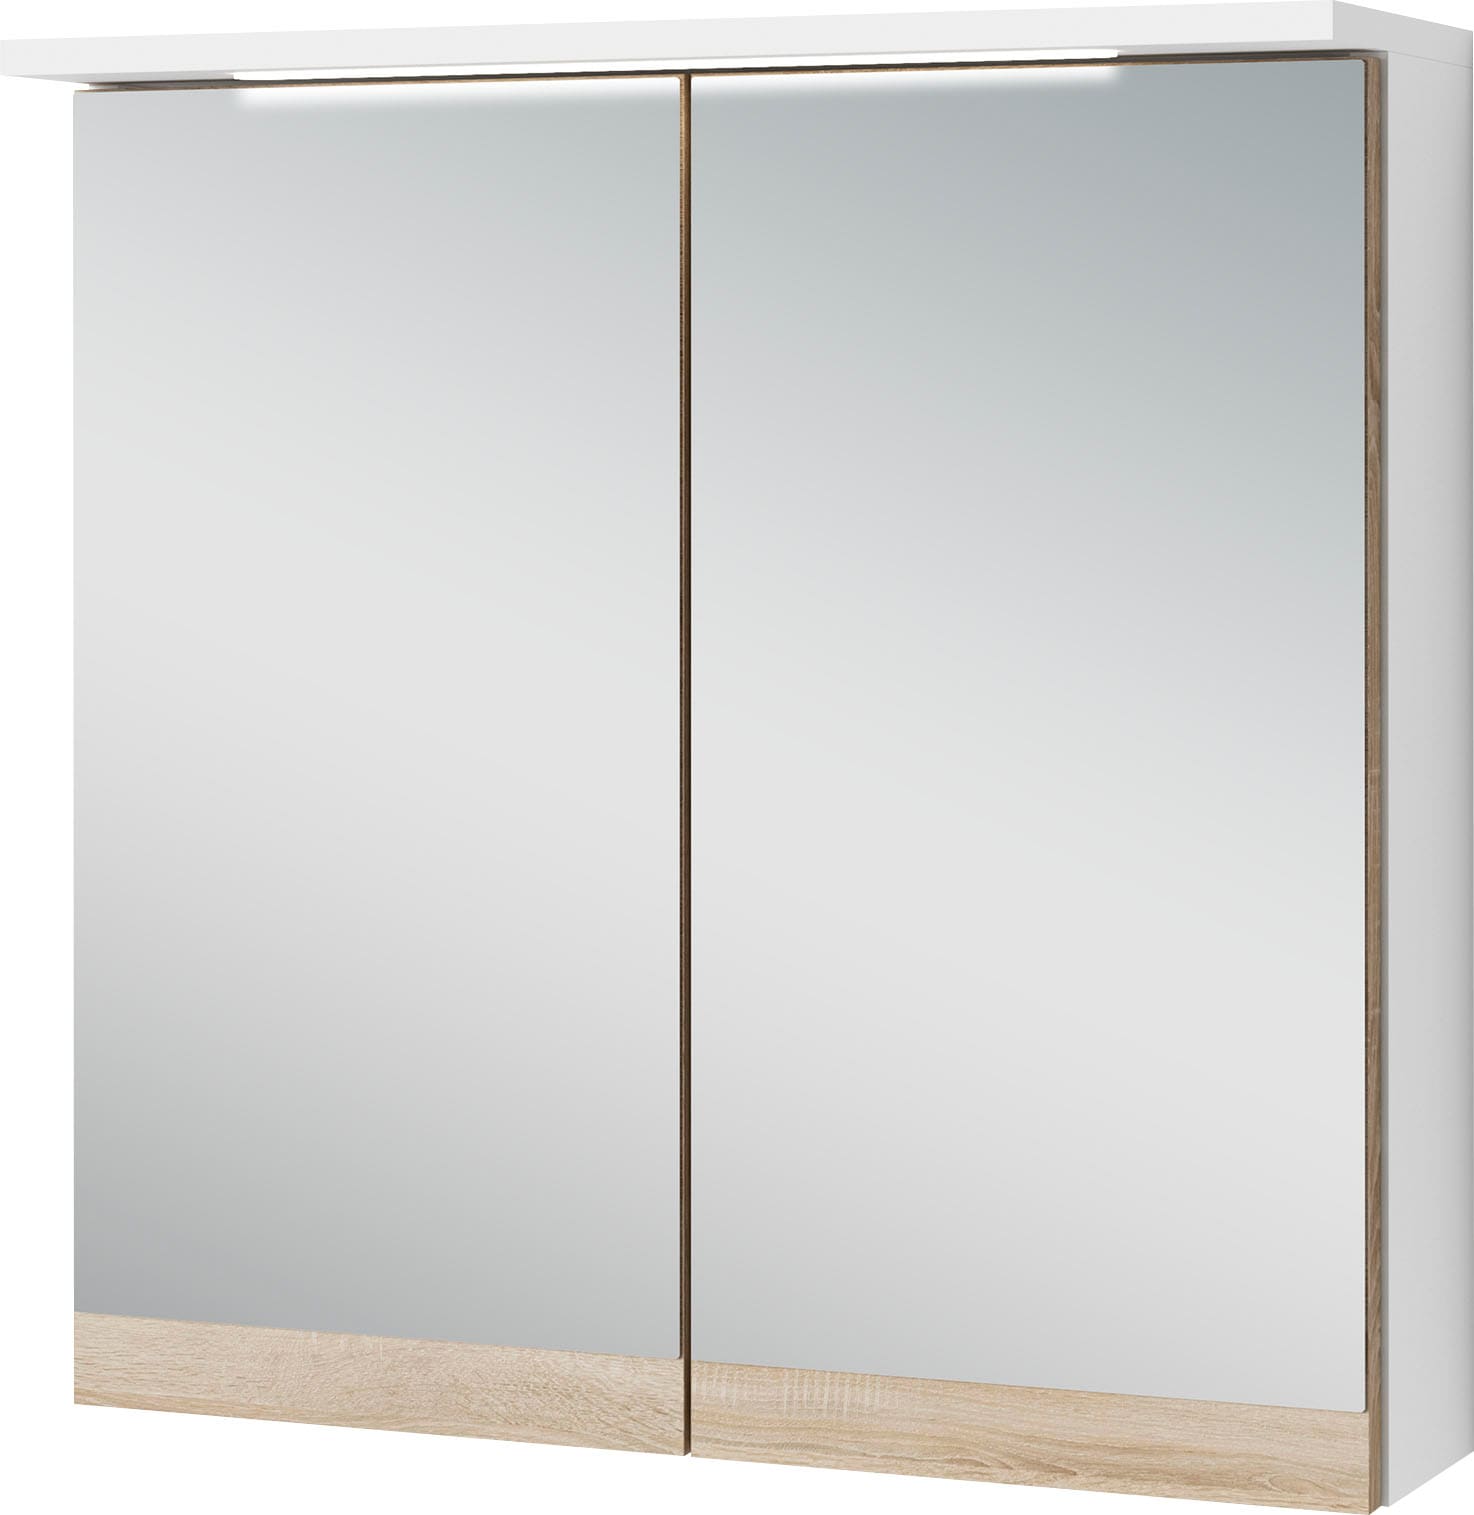 Spiegelschrank »Marino«, Breite 60 cm, mit soft close Türen, inklusive LED Beleuchtung